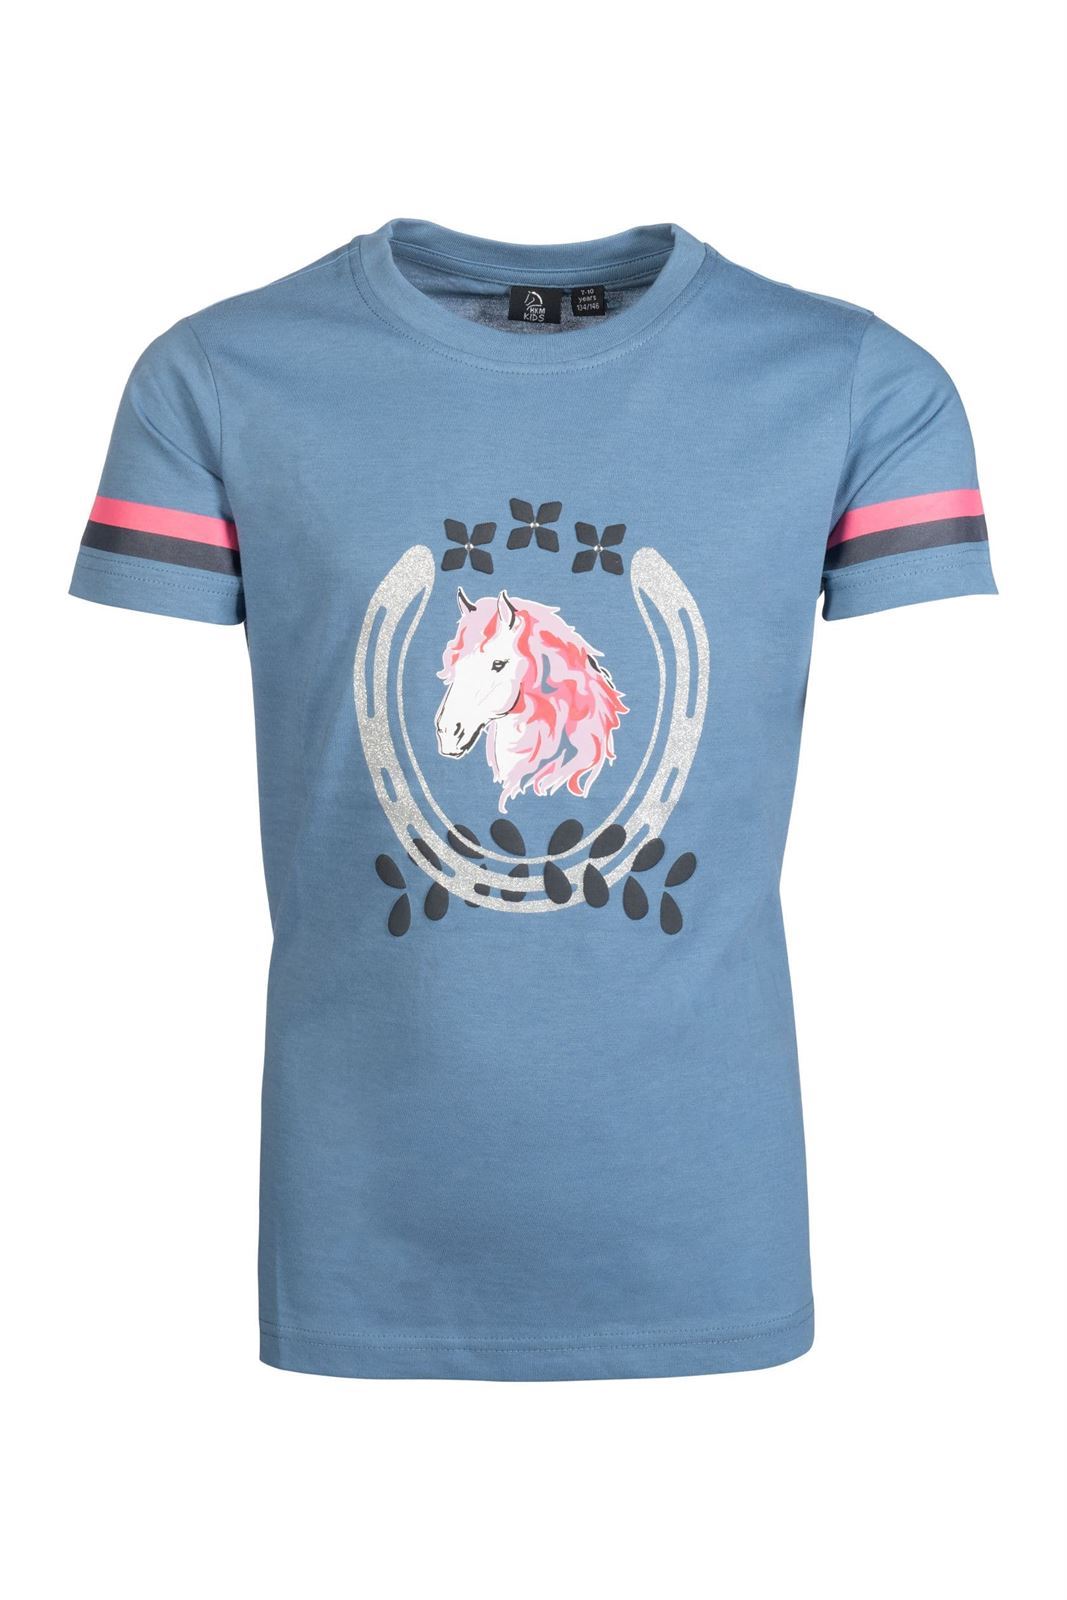 Camiseta HKM Sports Equipment Aymee color azul - Imagen 3